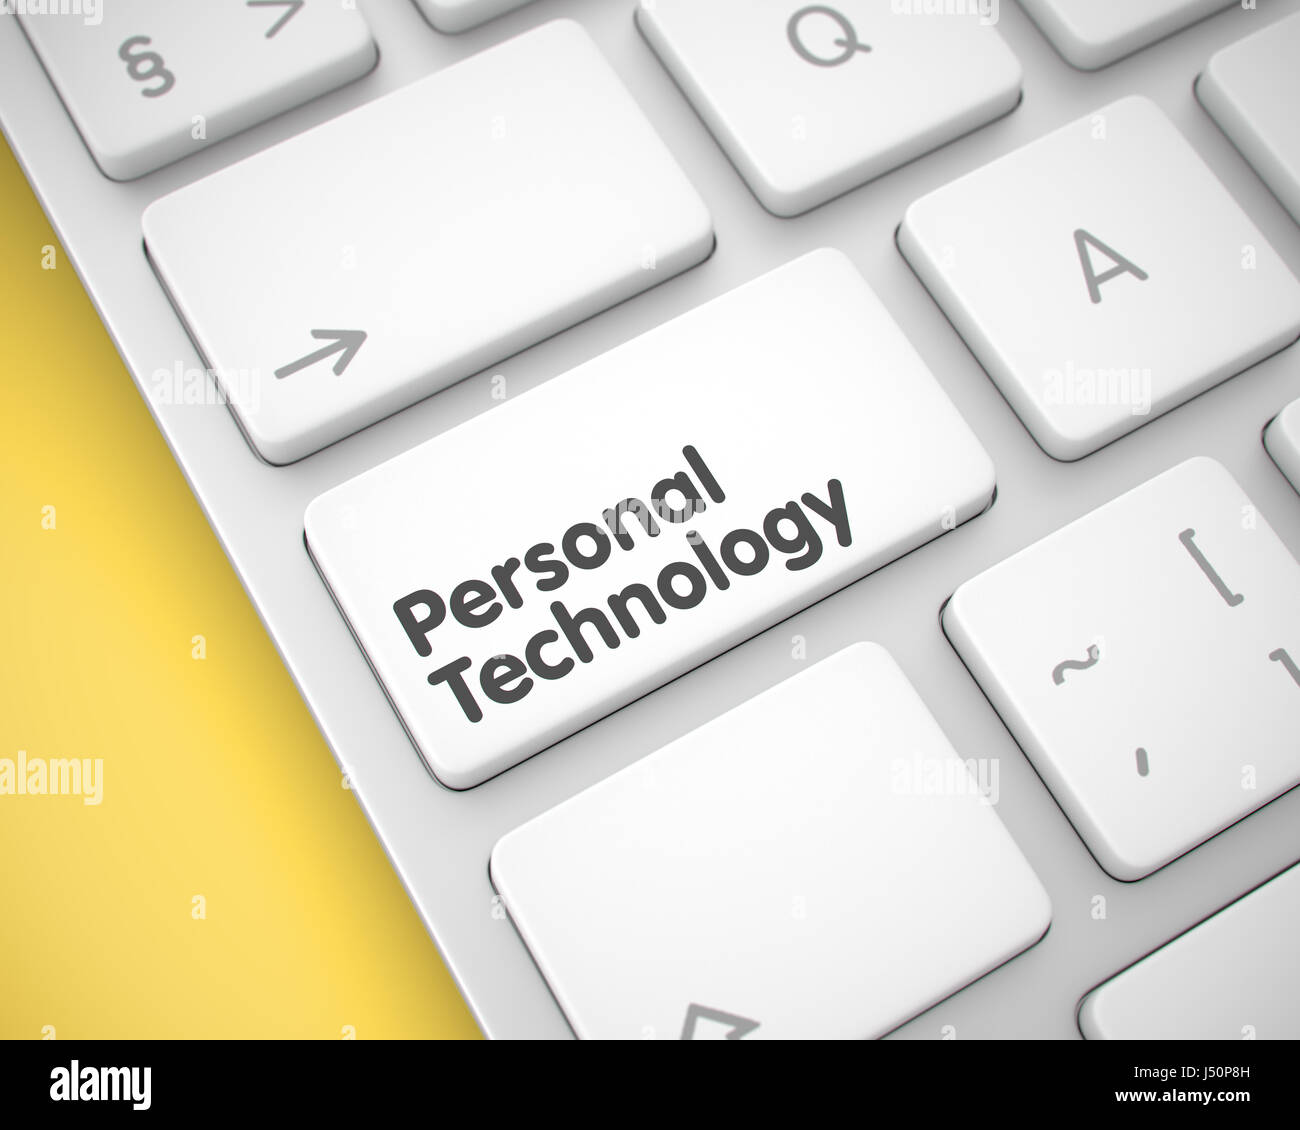 Personal Technology - Messaggio sul bianco dei tasti della tastiera. 3D. Foto Stock